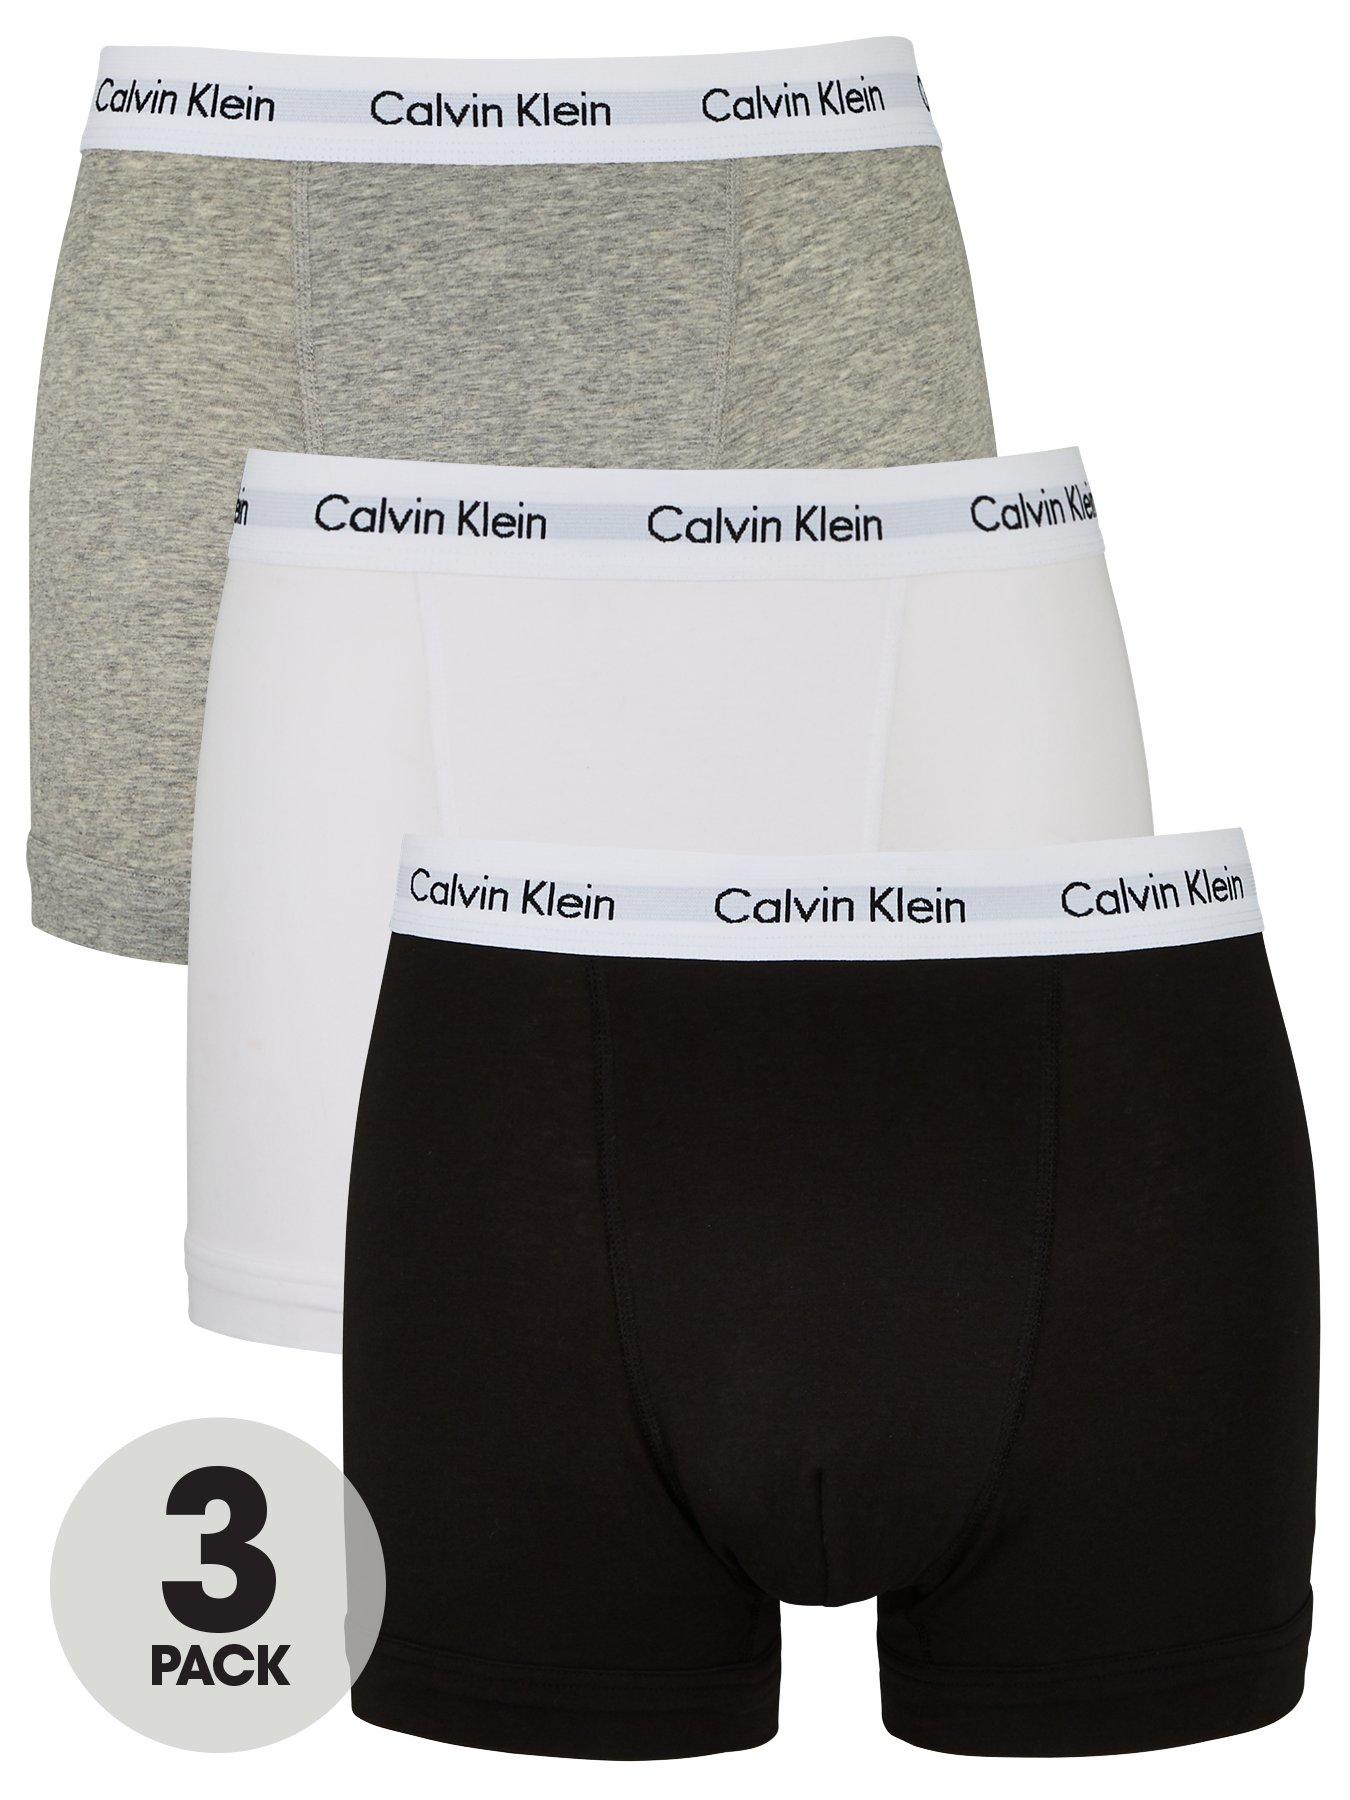 calvin klein boxers xxl